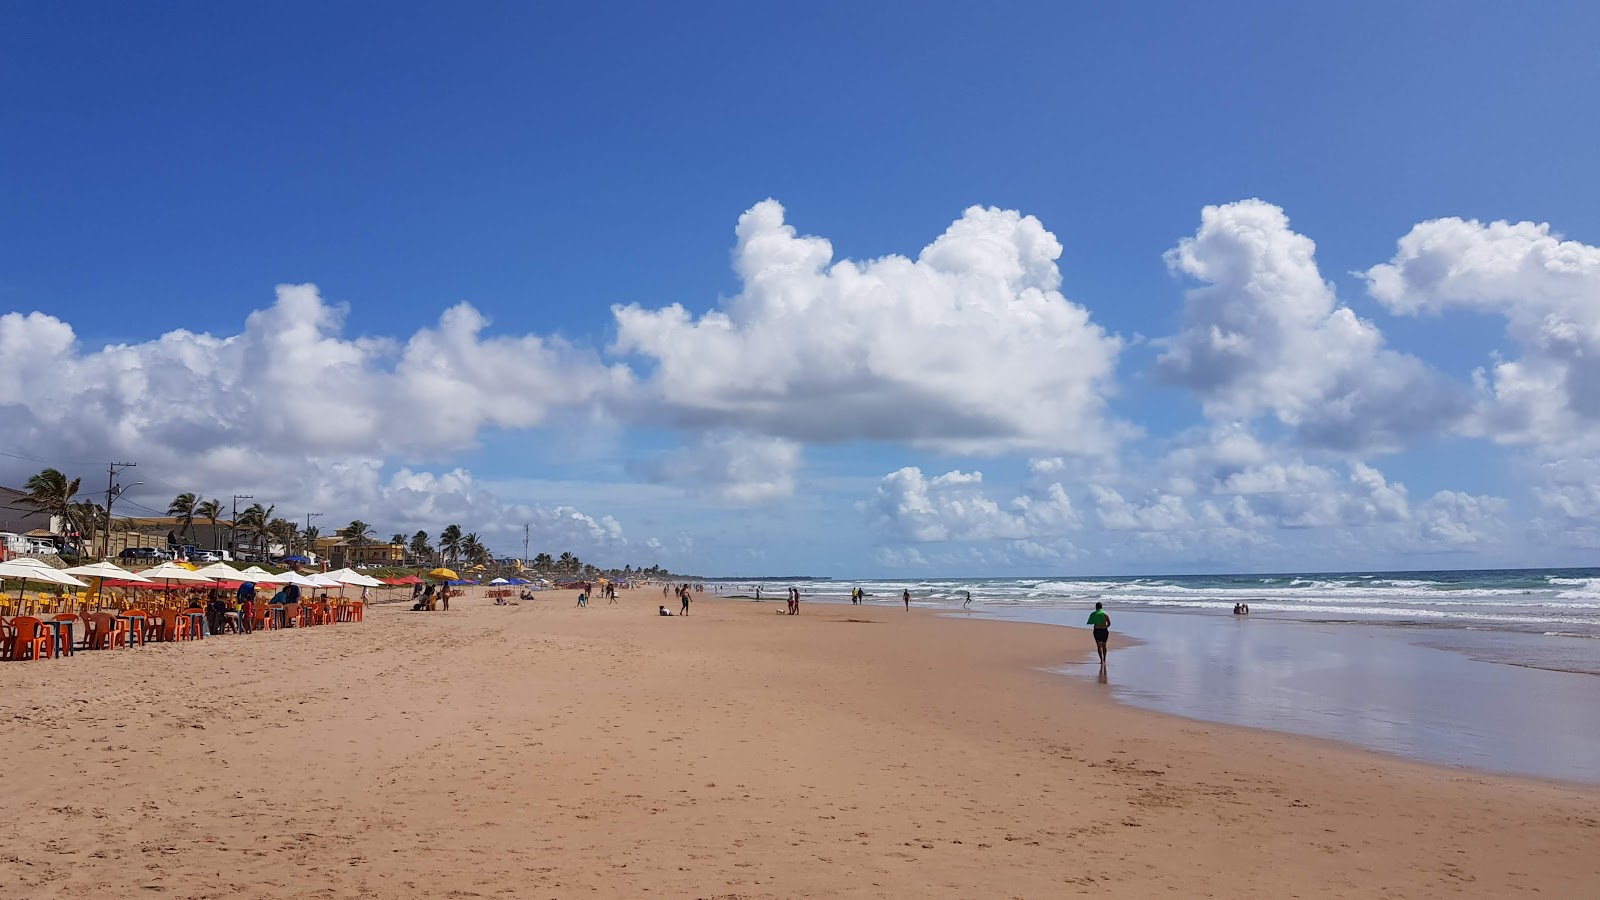 Praia de Ipitanga'in fotoğrafı parlak kum yüzey ile